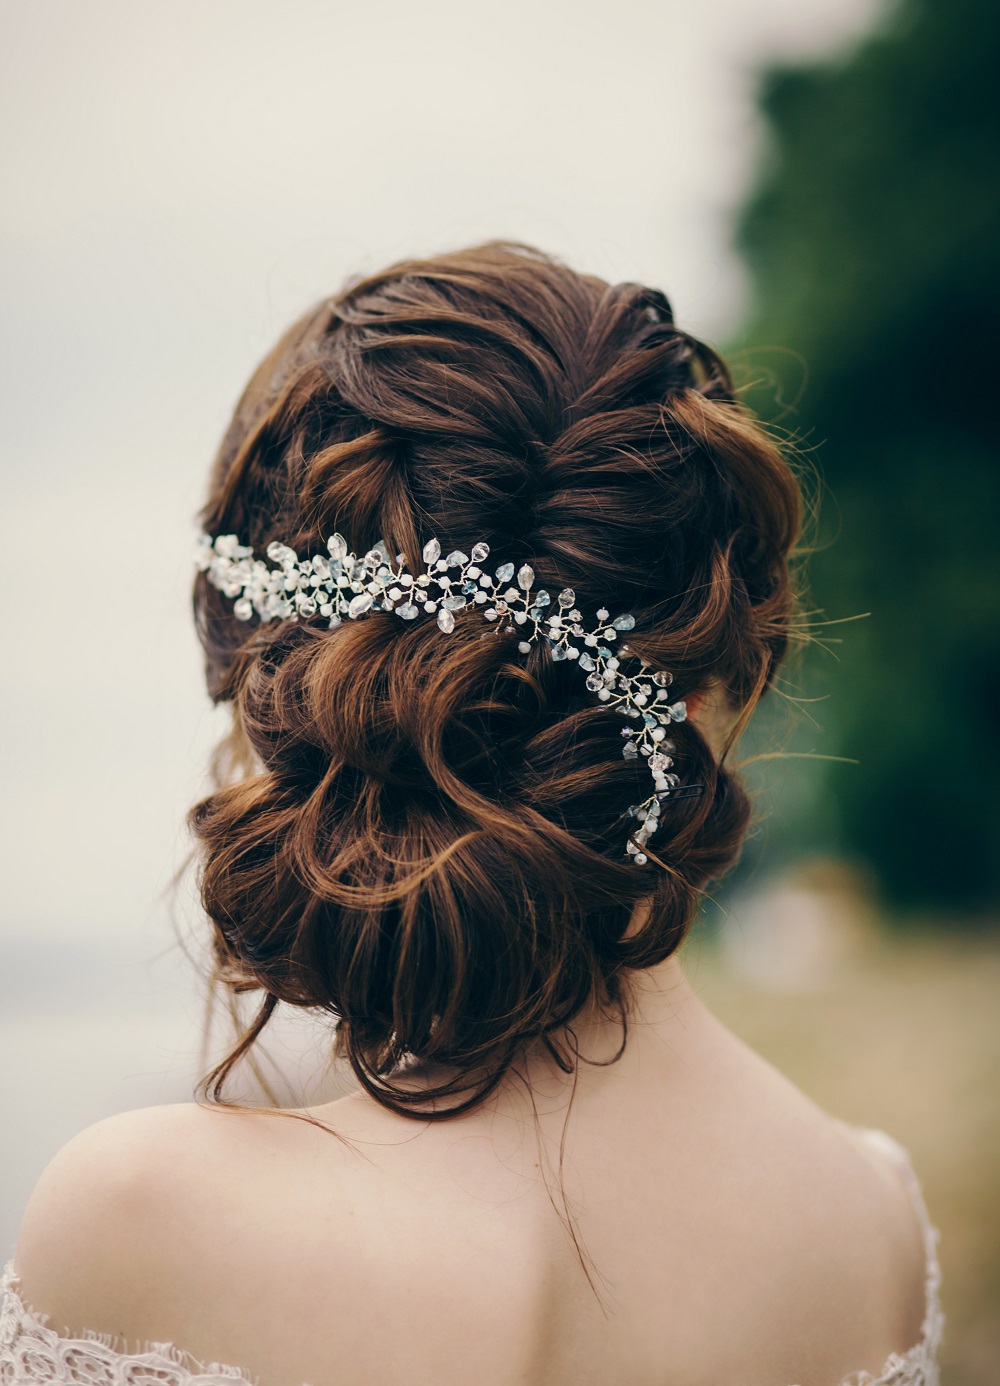 Piękny kok jako przykład fryzury na wesele.